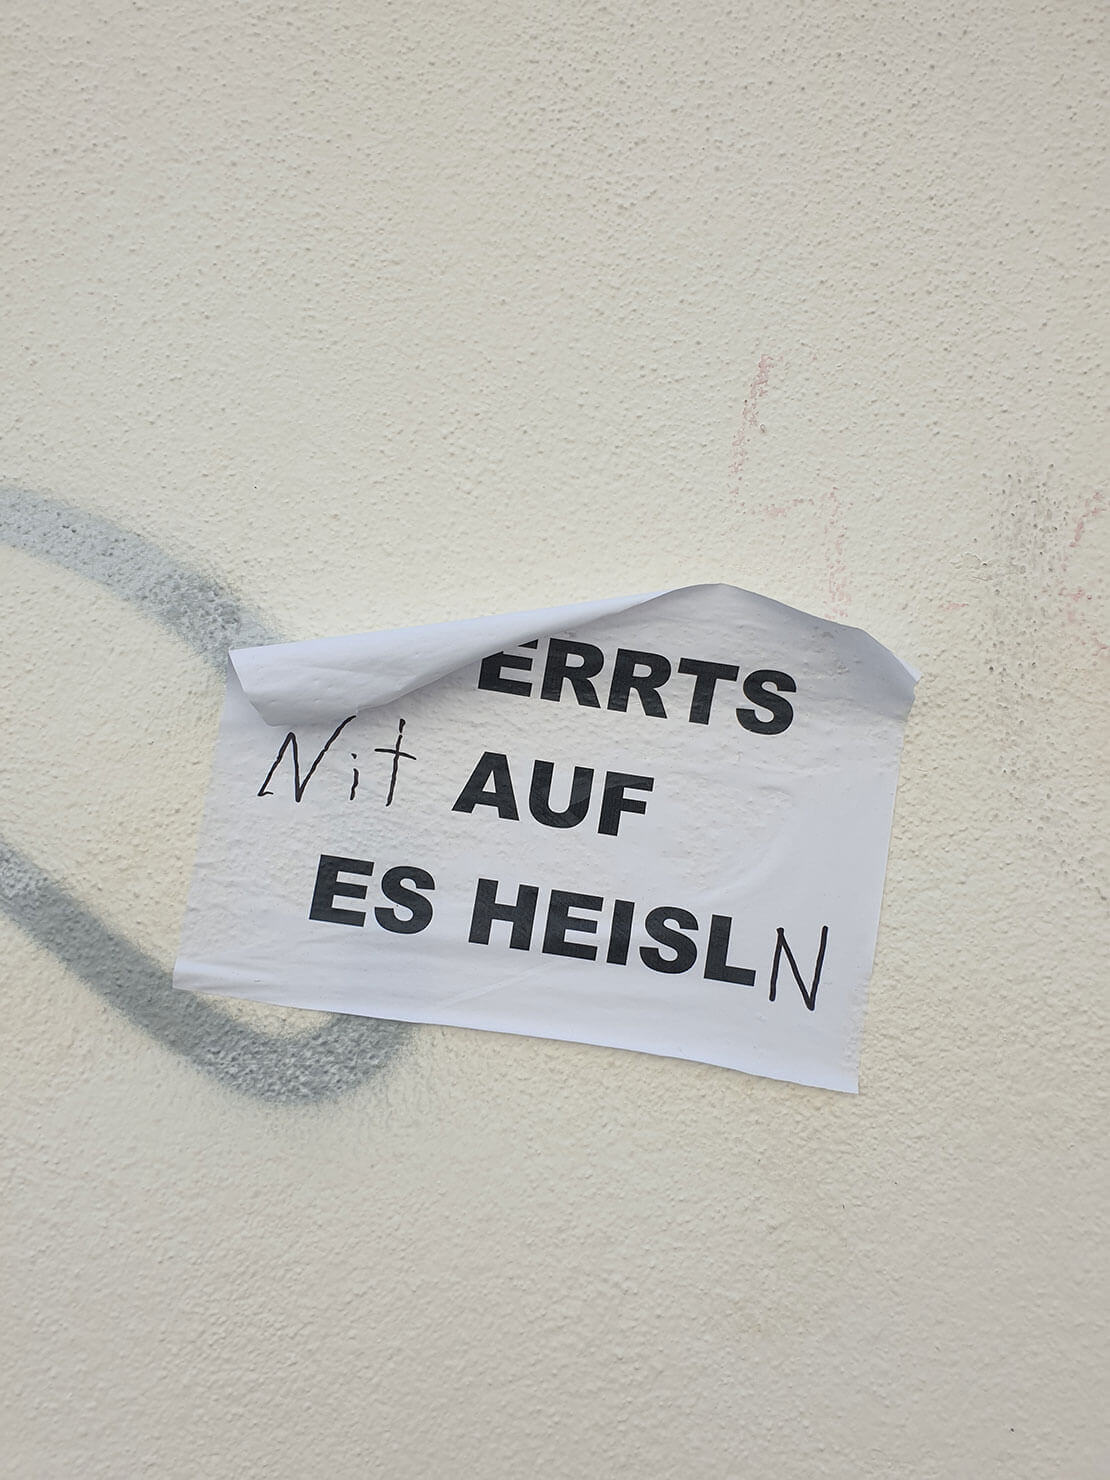 Diskurse am Augarten: „Sperrts (nit) auf es Heisl(n)“. Unbekannt, Augarten, April 2020, Foto: Karina Karadensky, Wien Museum 